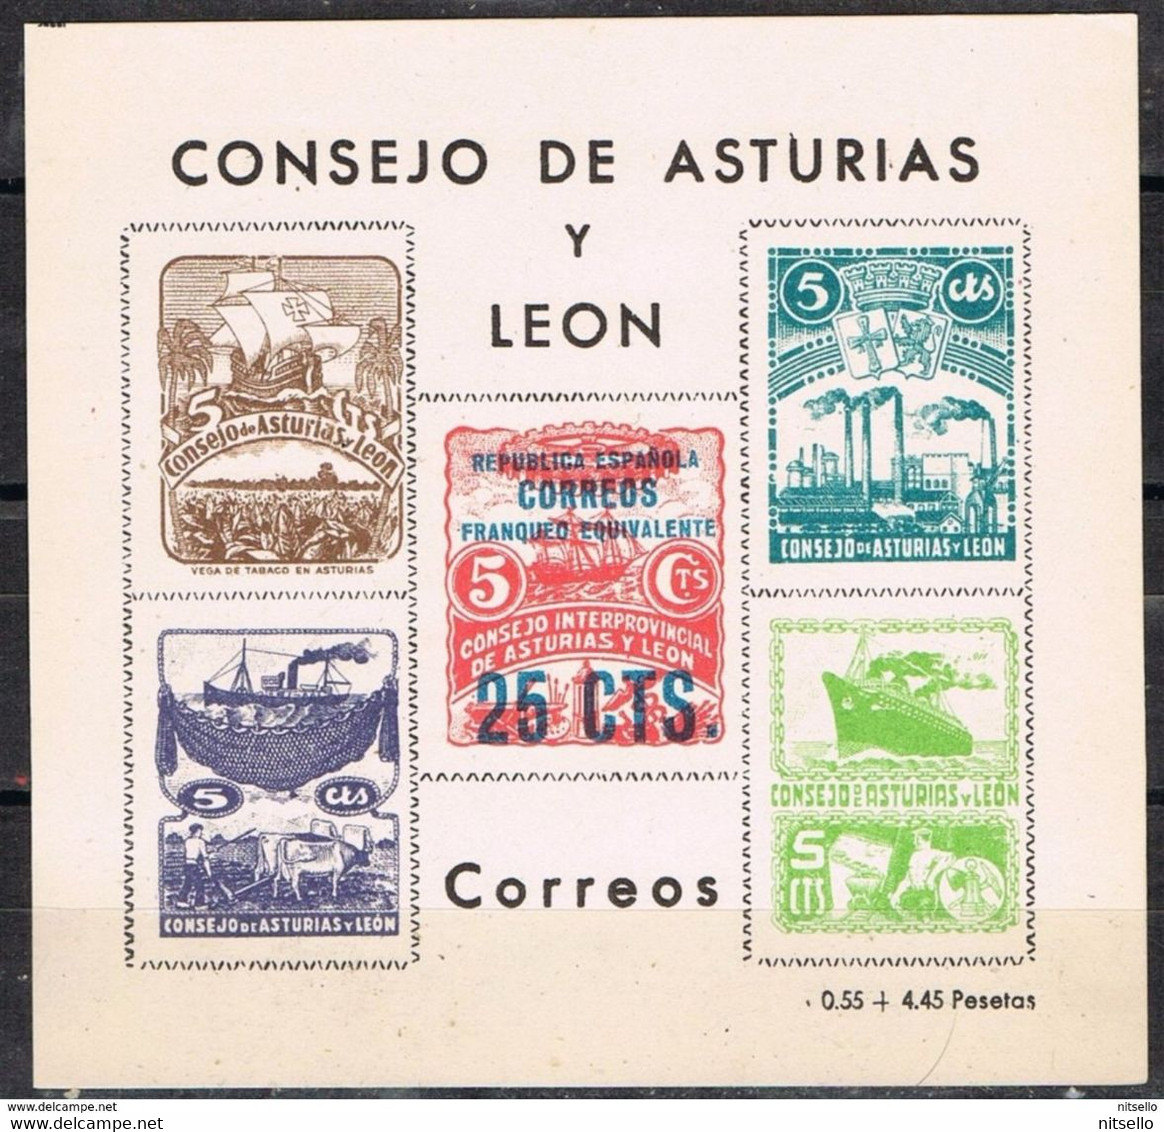 LOTE 1385  ///  CONSEJO DE ASTURIAS Y LEON   25 Ctos       ¡¡¡¡¡¡ LIQUIDATION !!!!!!! - Asturien & Léon